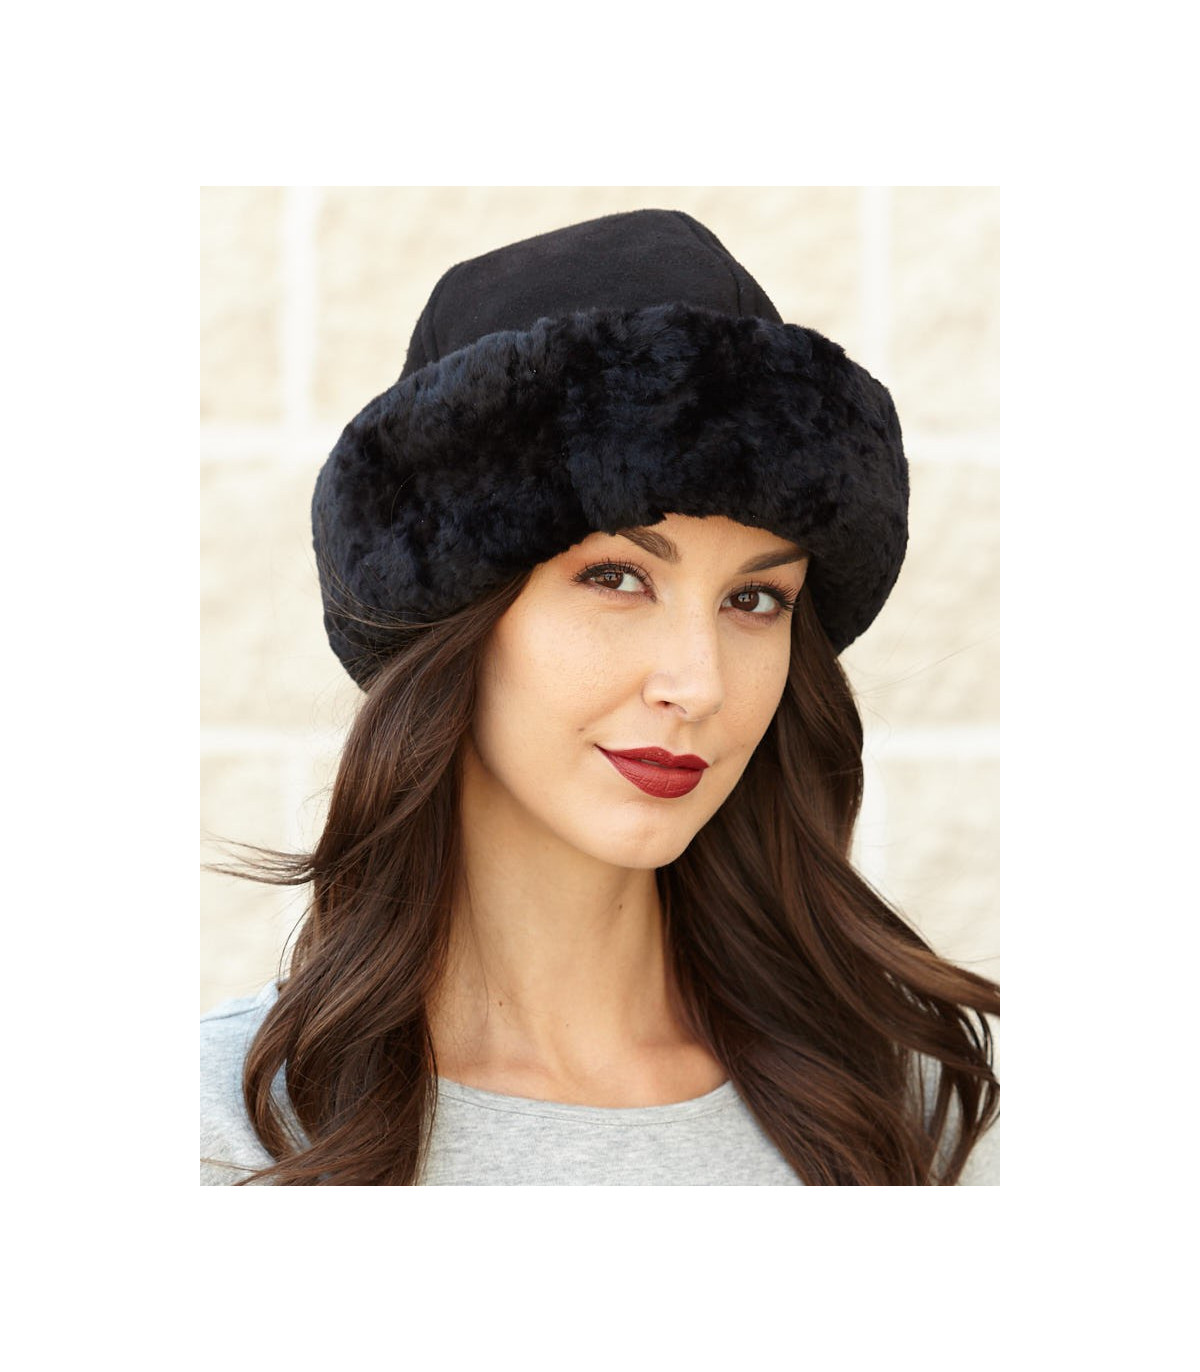 tale overvældende Link The Olie Shearling Sheepskin Hat in Black: FurHatWorld.com